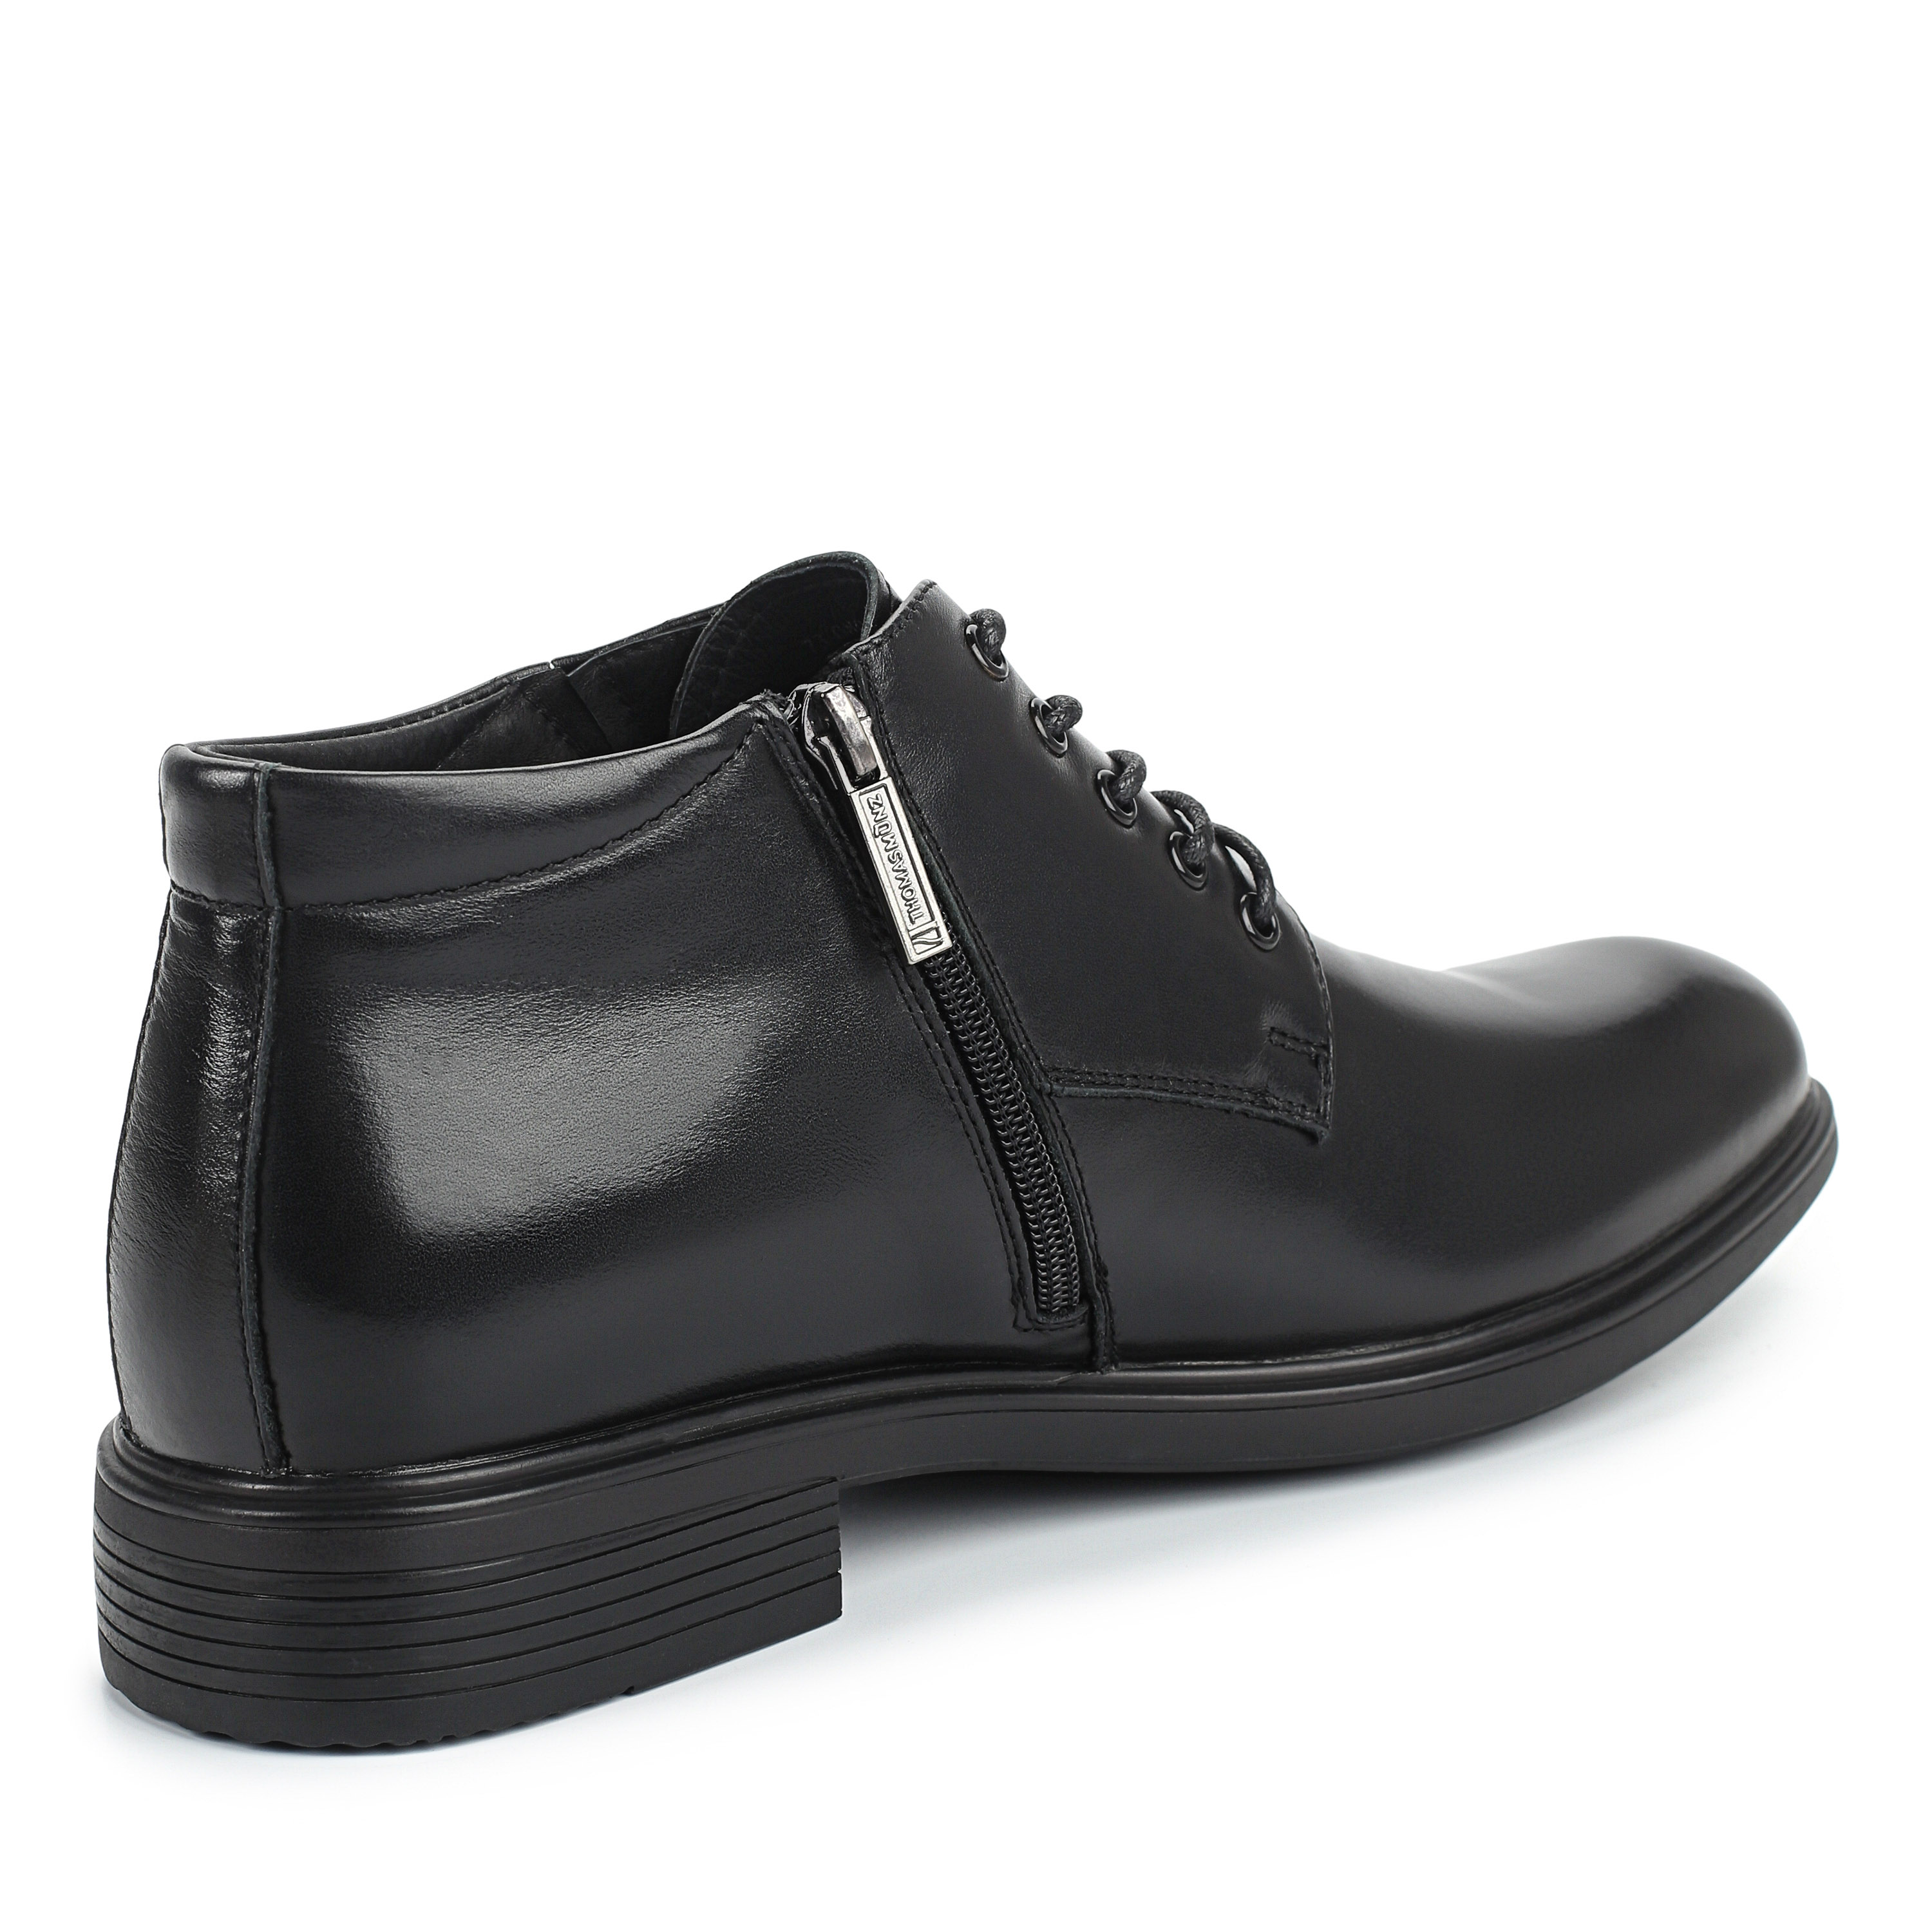 Ботинки Thomas Munz 73-080B-2101, цвет черный, размер 40 дерби - фото 3